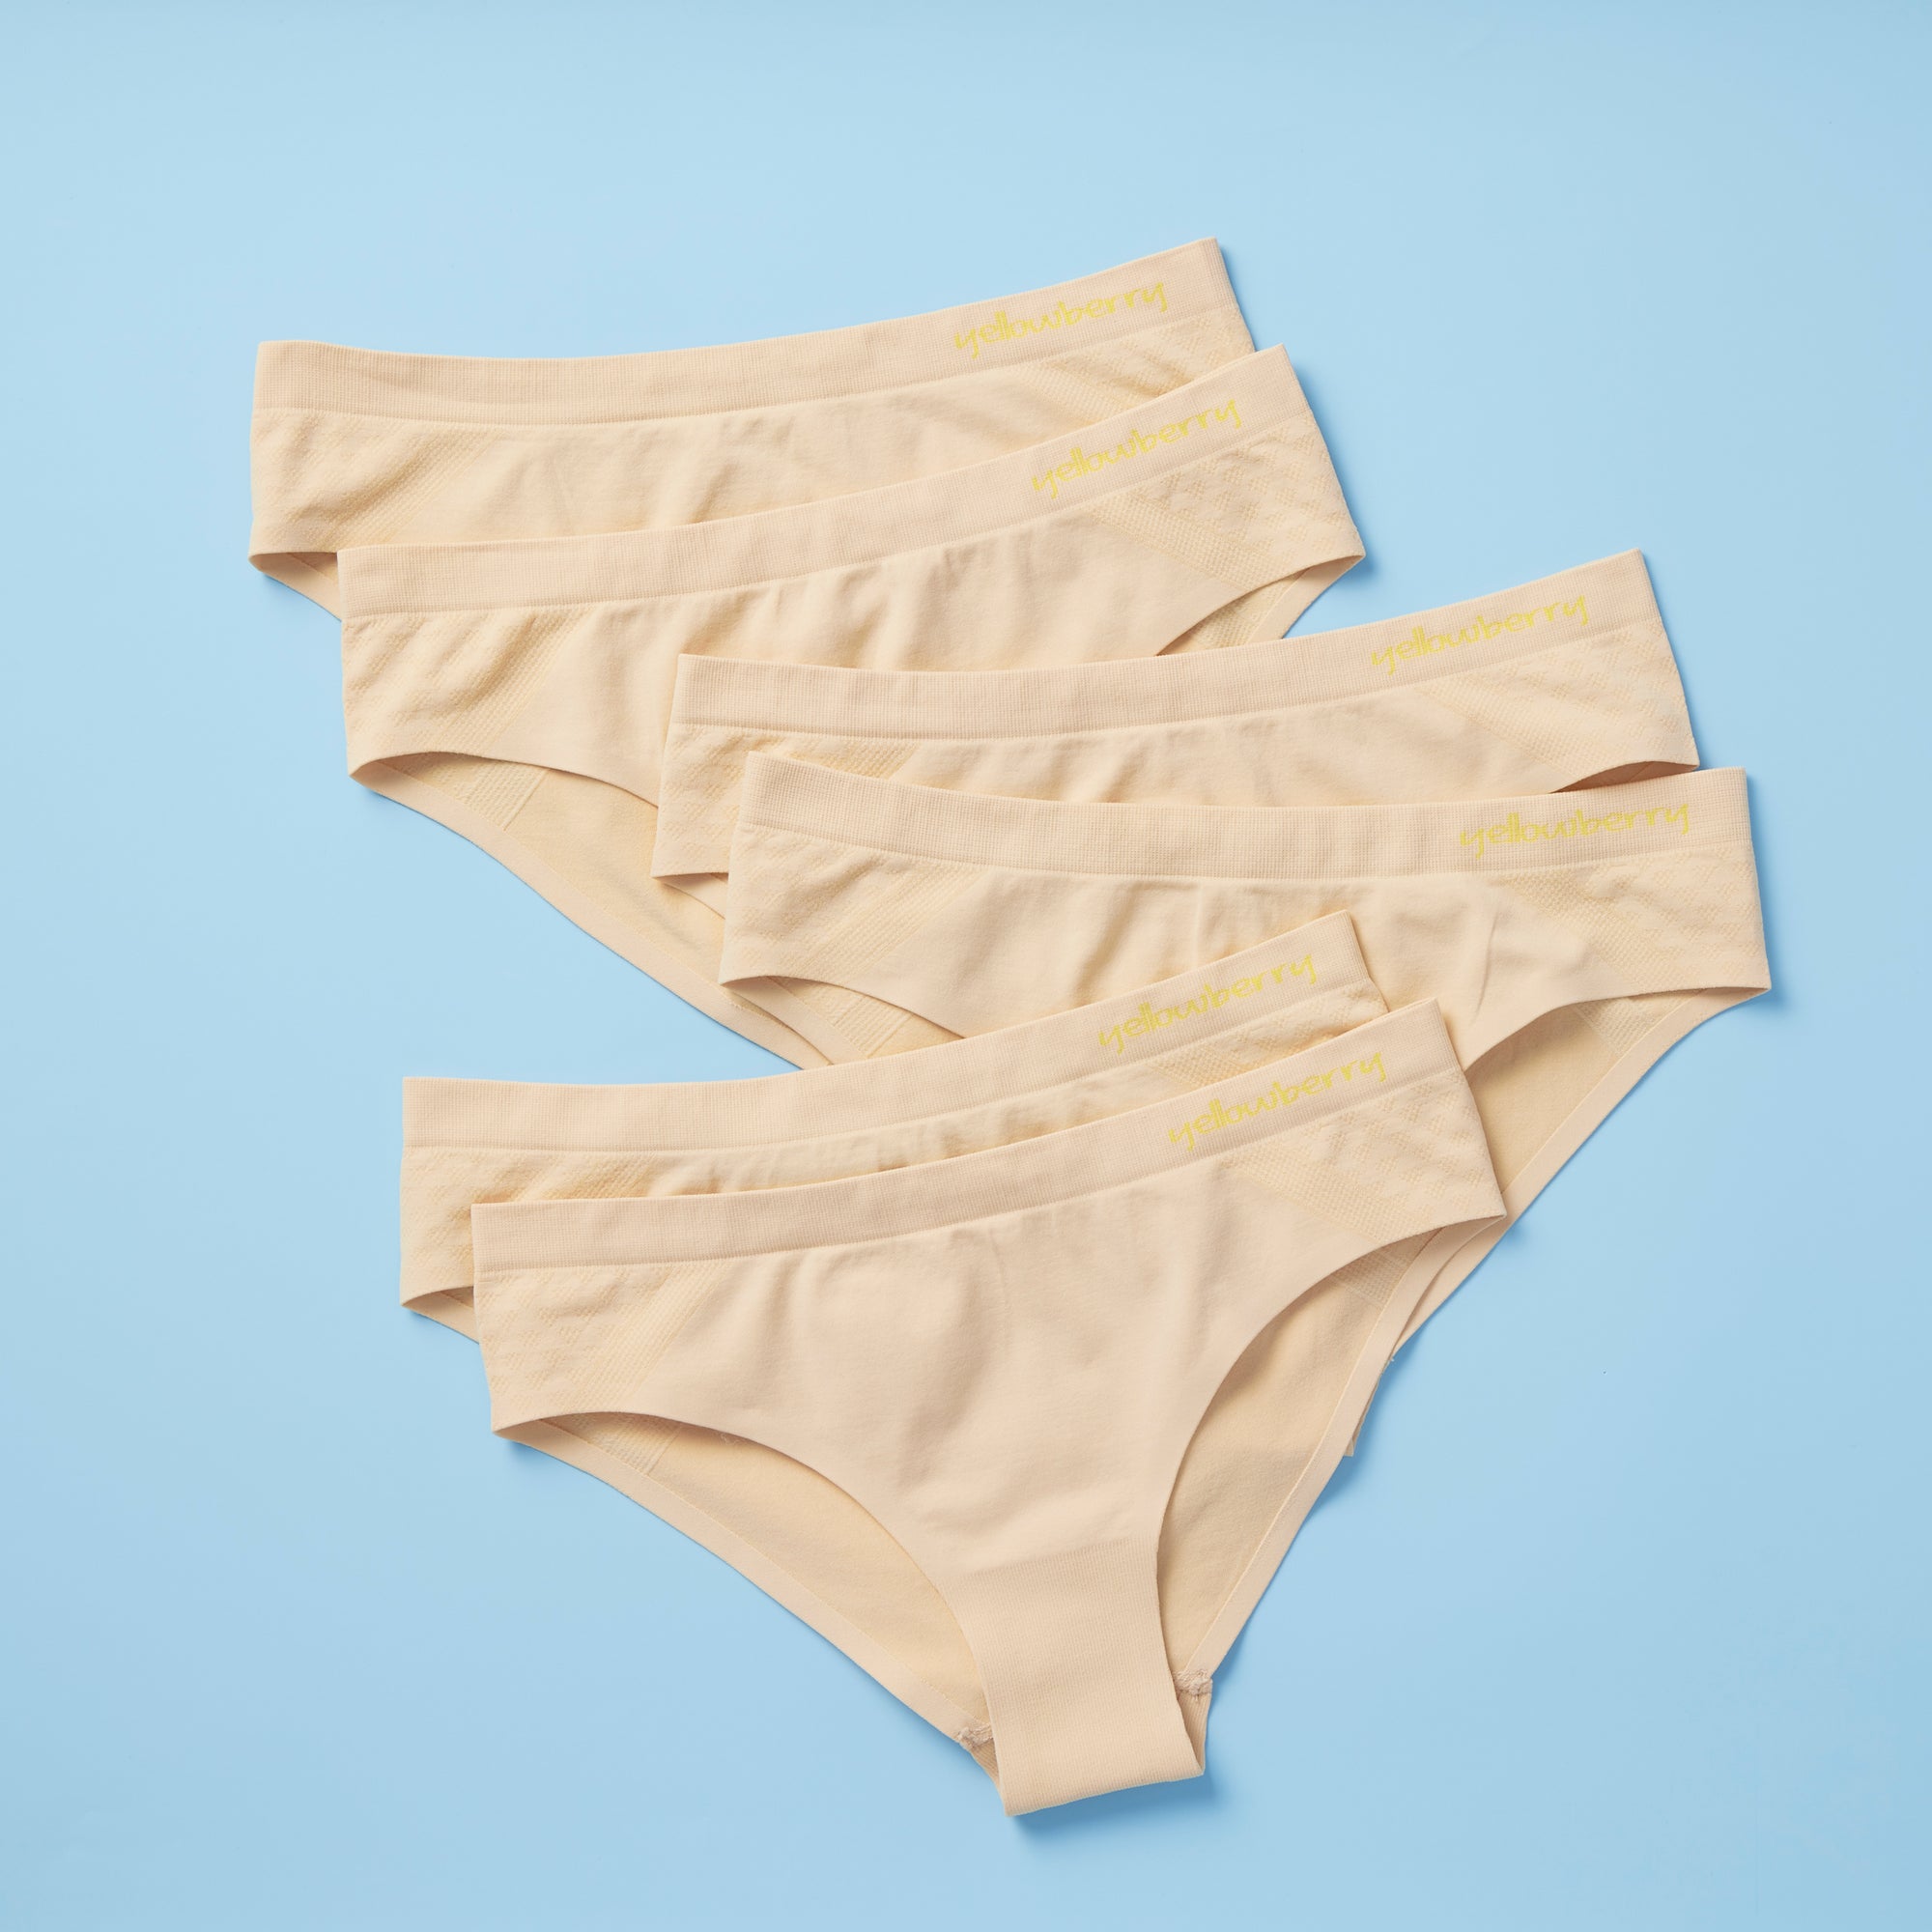 Pom Pom Underwear Bundle :: Coconut Dots – Yellowberry Dev